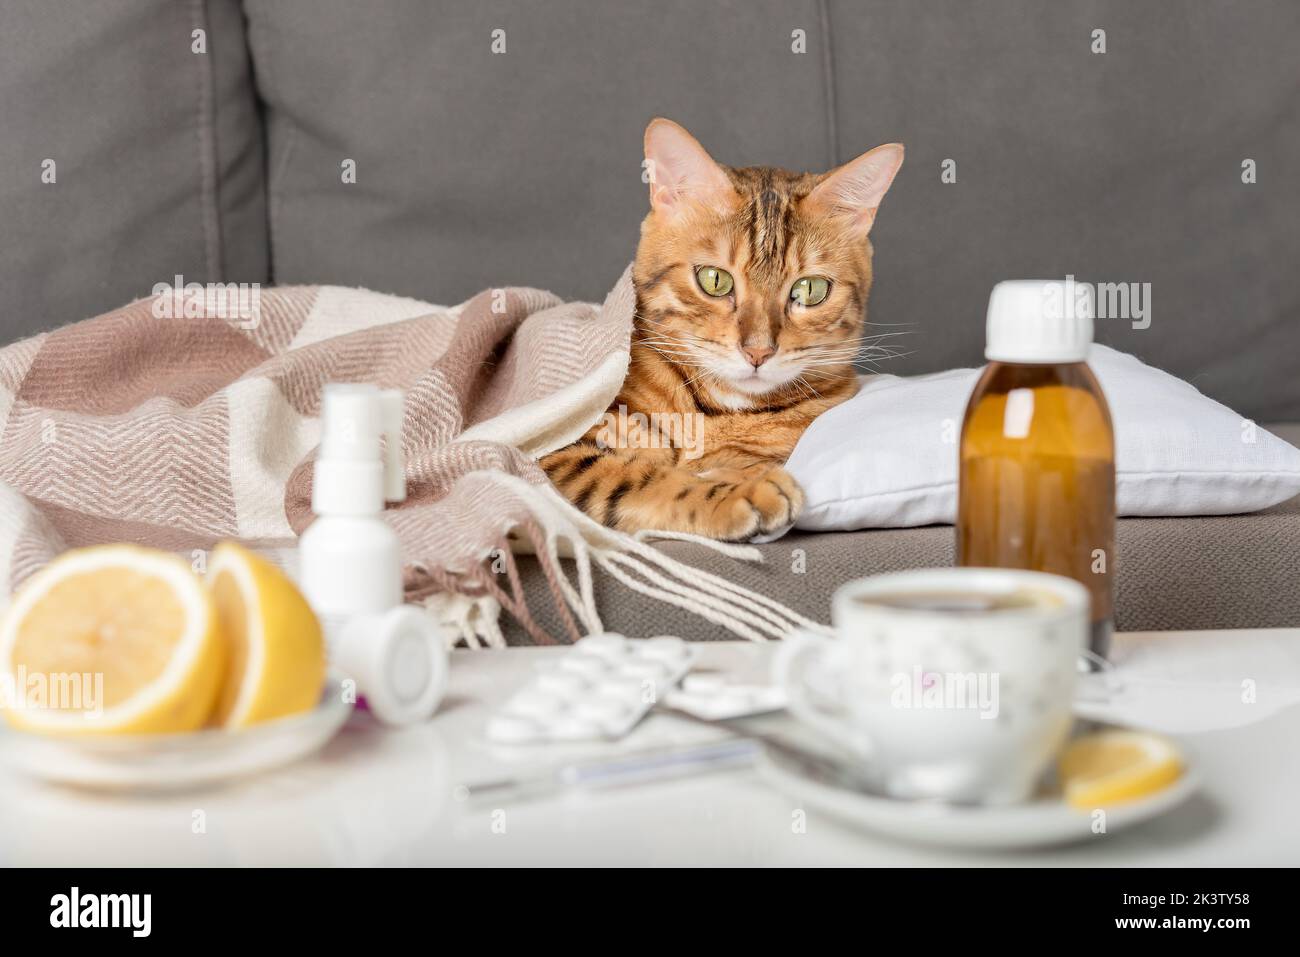 Un gatto malato giace sul divano, avvolto in una coperta. Gatto bengala con sintomi influenzali o freddi in trattamento a casa. Concetto di raffreddore e influenza invernale. Foto Stock